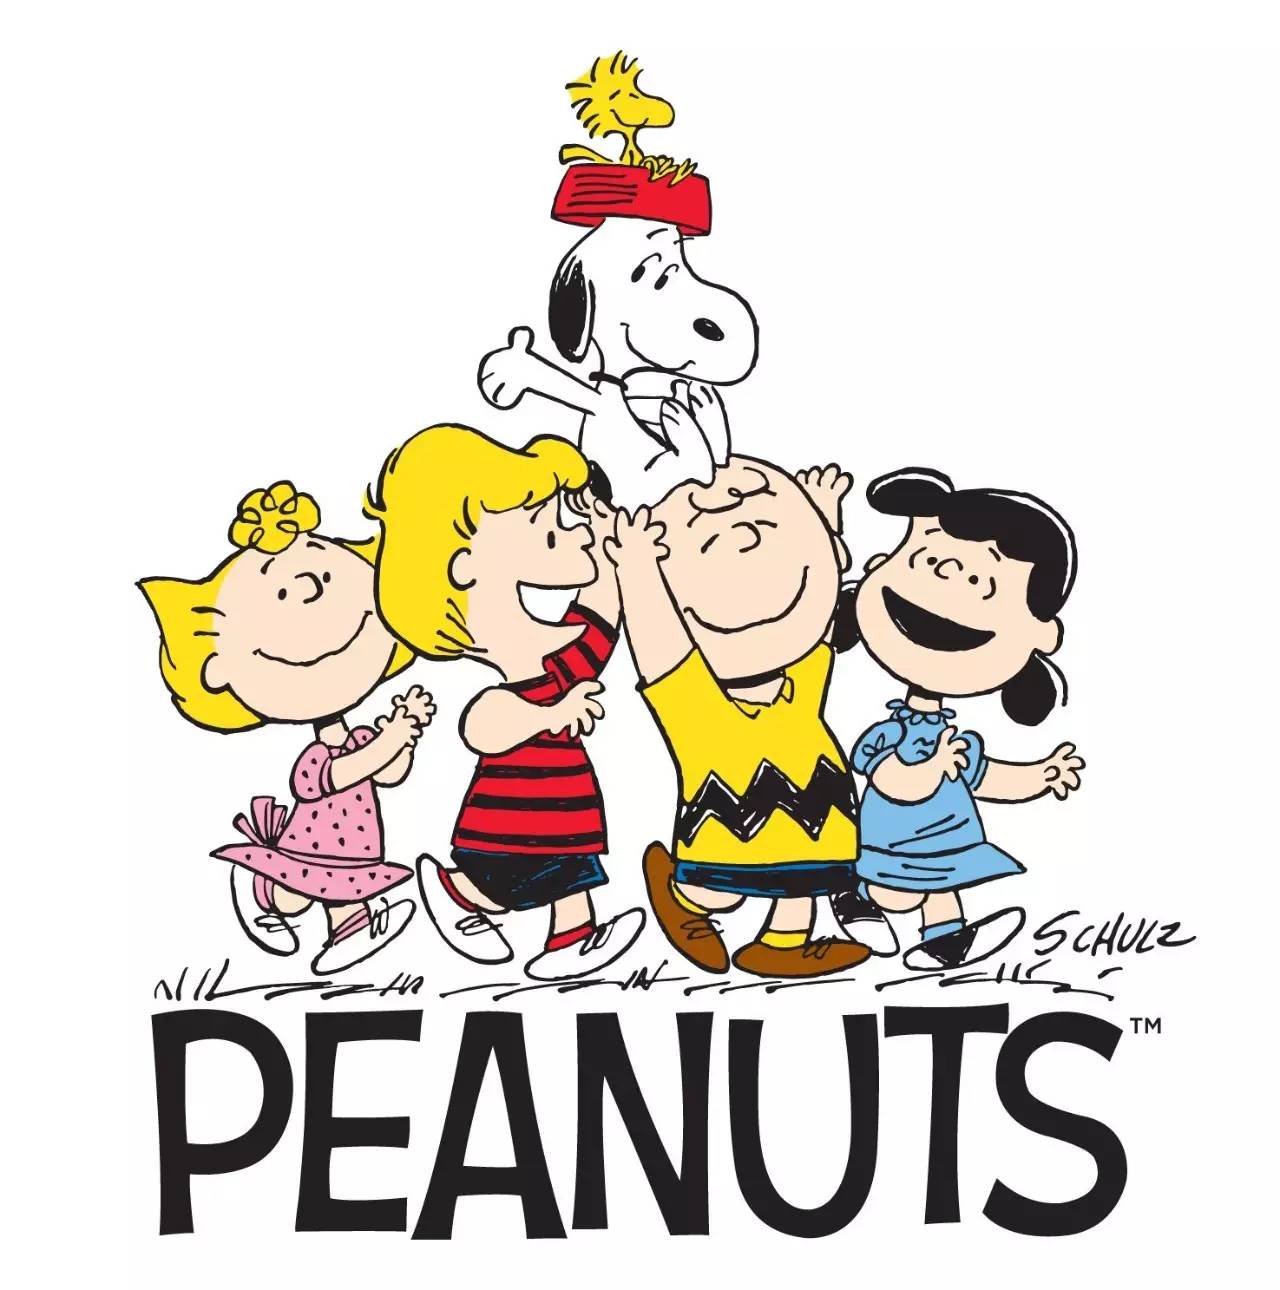 下次提起《peanuts》,可千万别只知道史努比了!